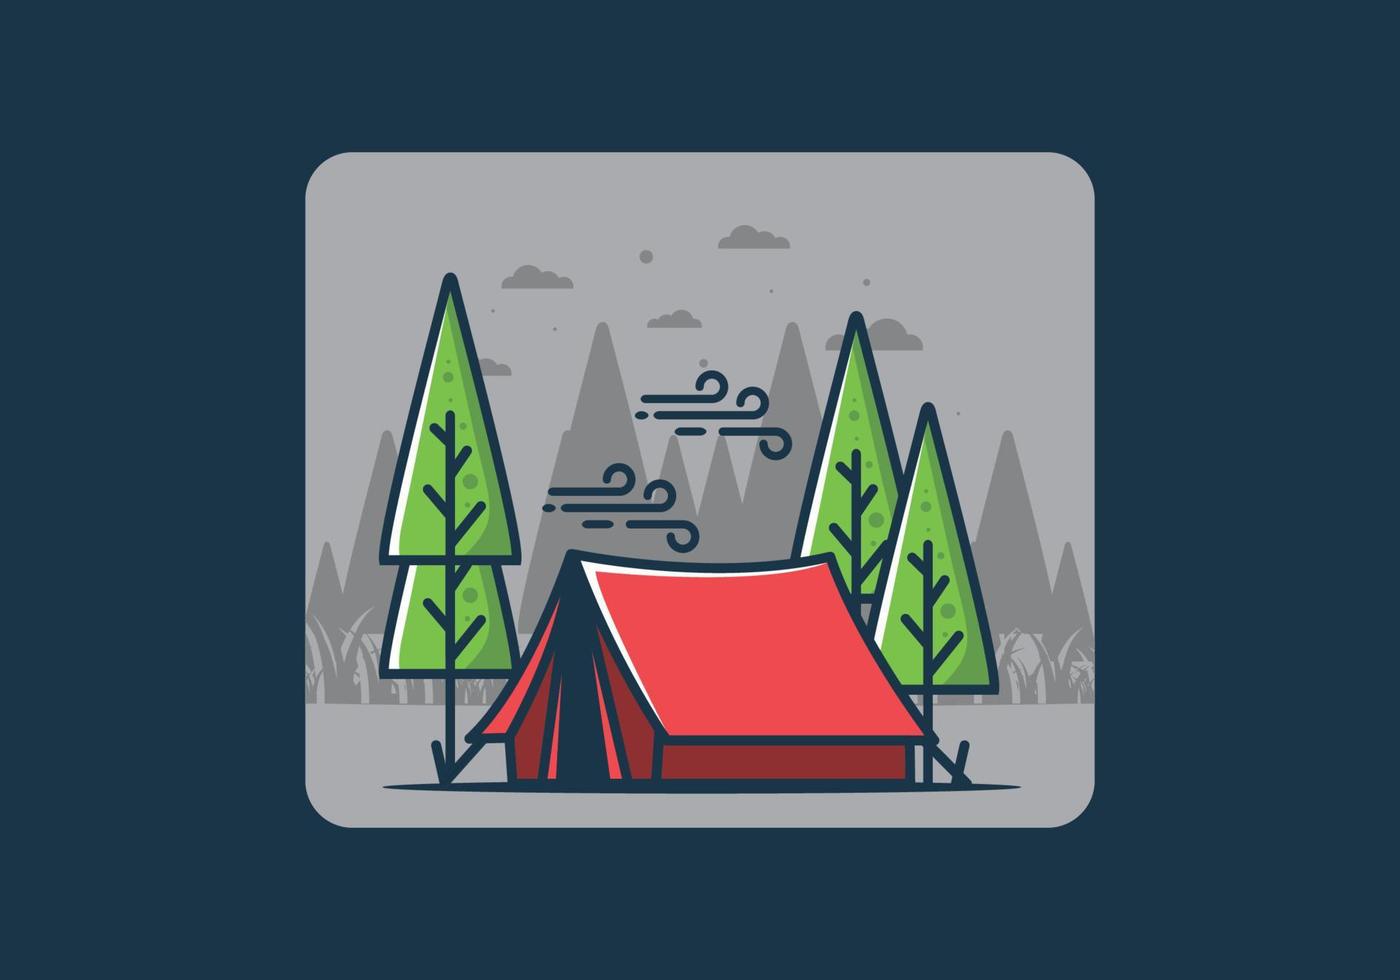 grande tenda de acampamento e ilustração de pinheiros vetor